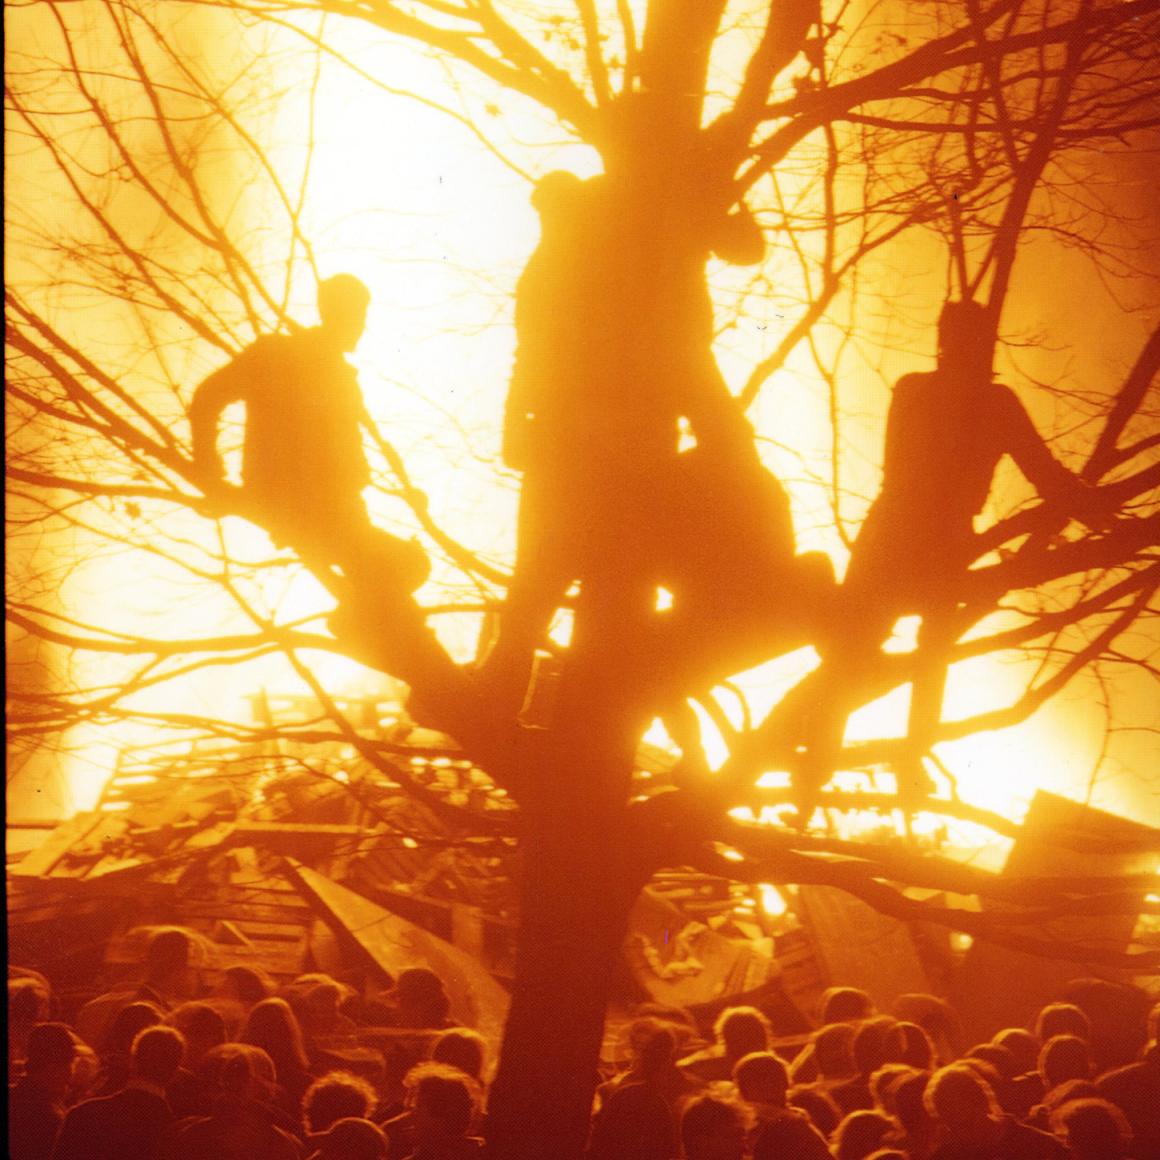 1985 bonfire